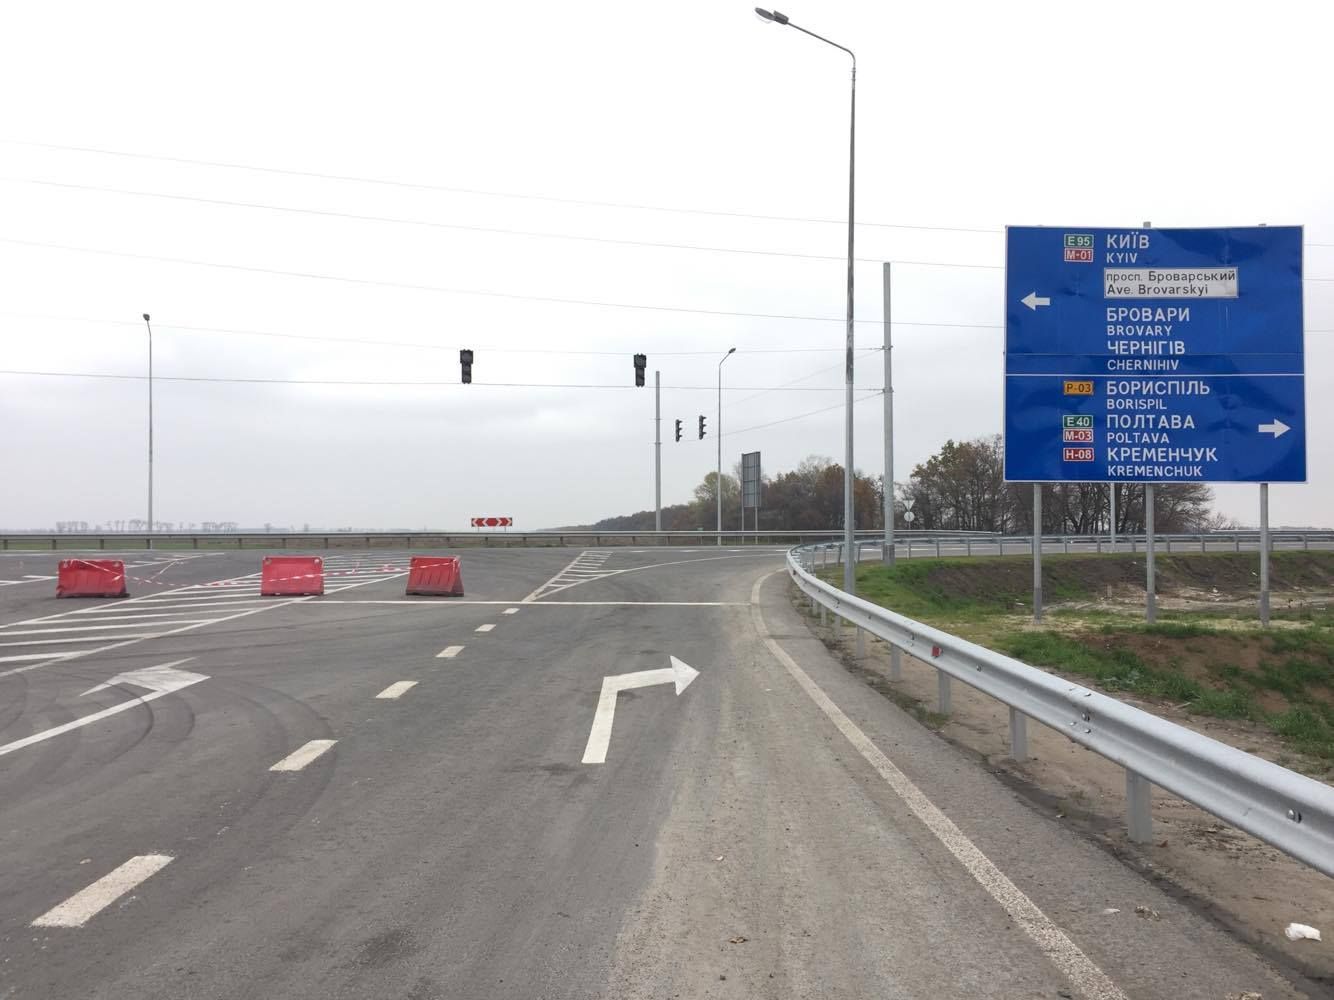 Водителей предупреждают о пробках на подъездной дороге к аэропорту "Борисполь"